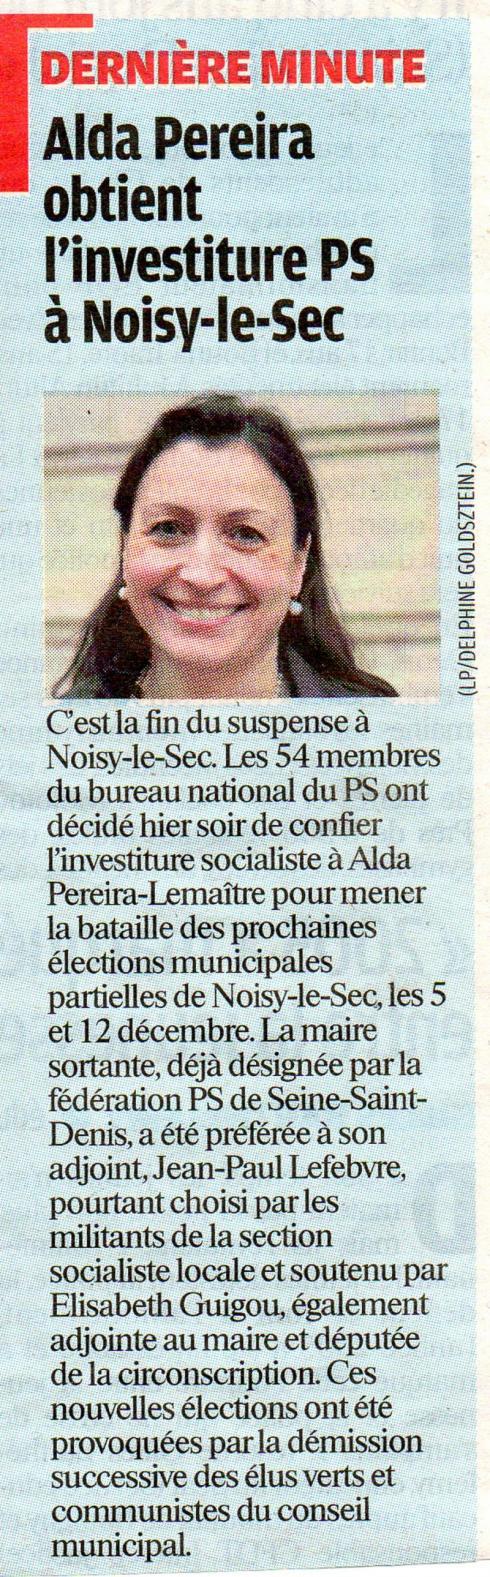 OFFICIEL : Alda Pereira-Lemaitre est investie tête de liste socialiste contre l'avis de militants de sa section